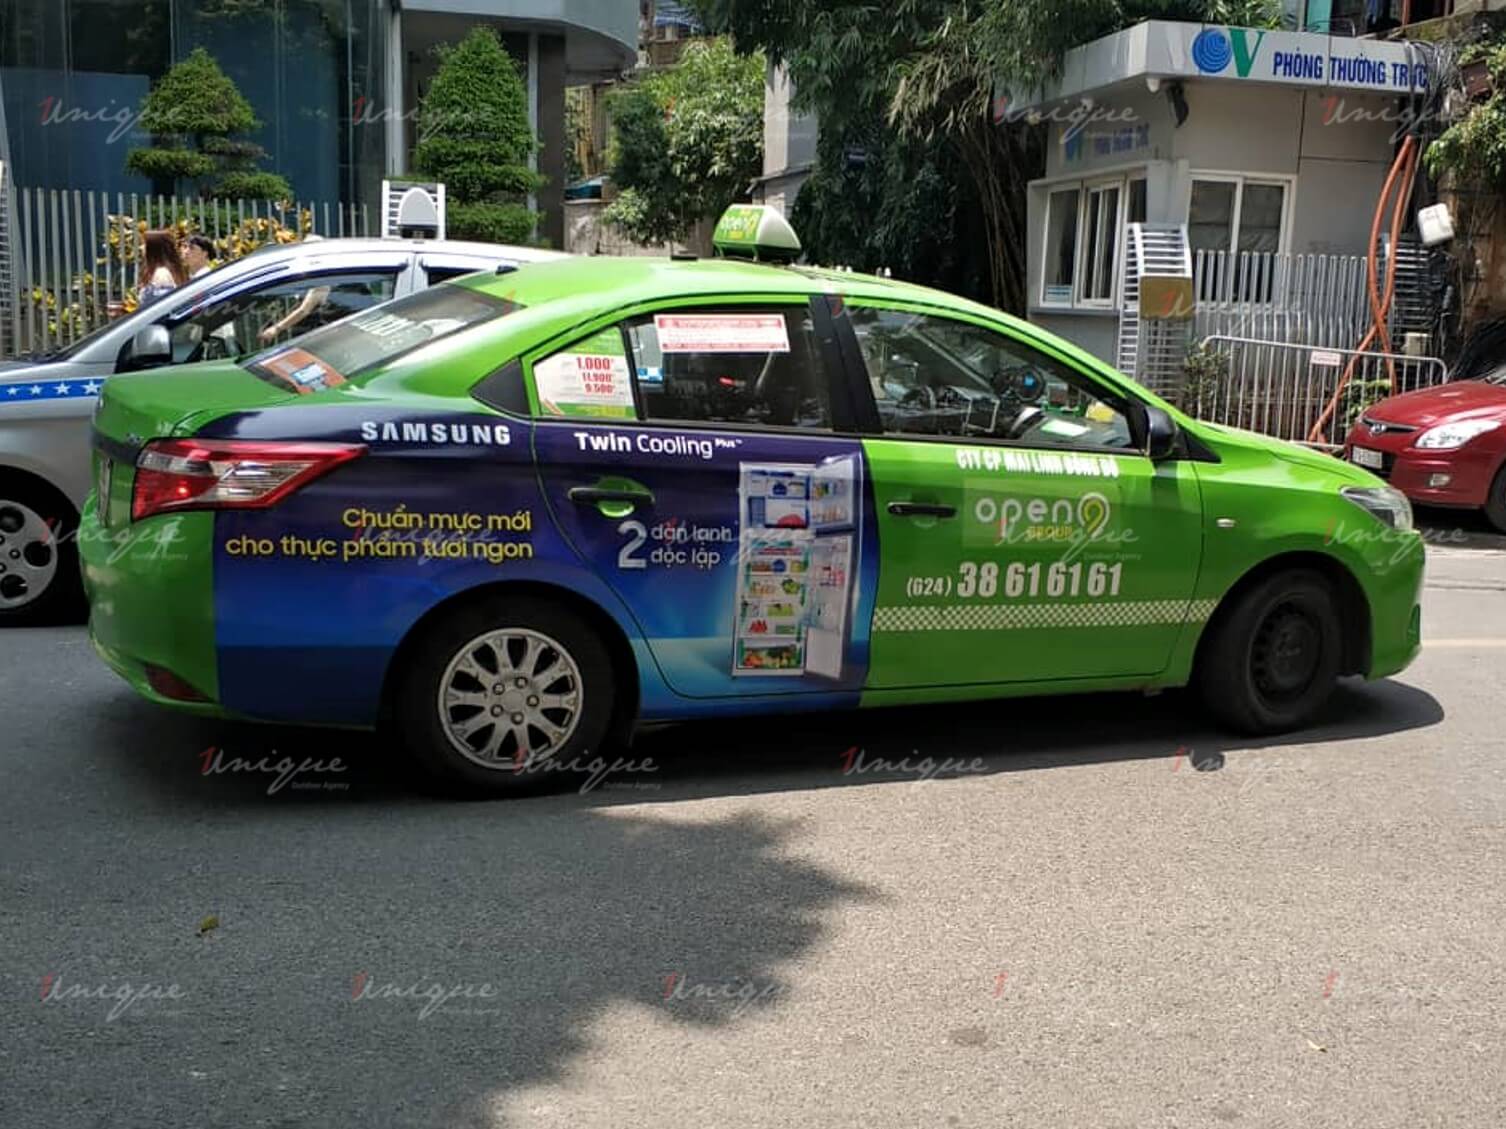 Quảng cáo trên taxi Open 99 tại nhiều tỉnh thành